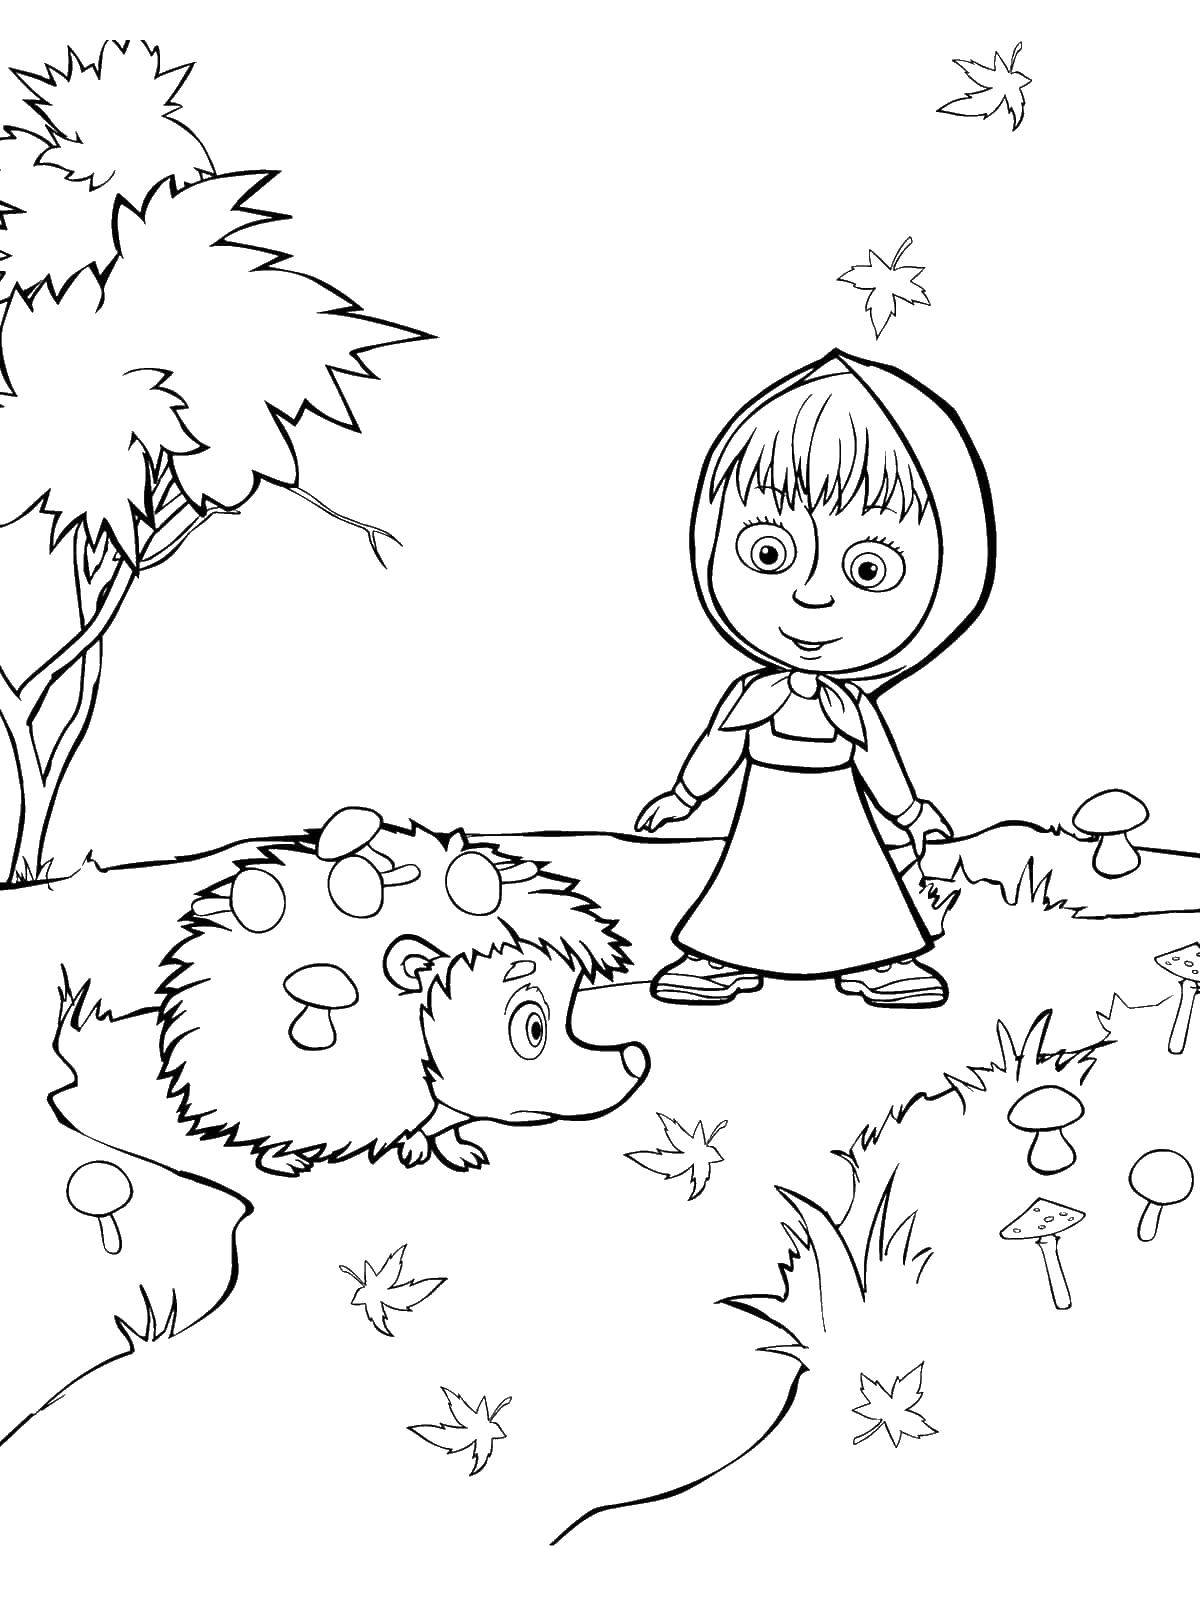 Раскраски для детей про озорную Машу из мультфильма Маша и медведь  Маша и ежик с грибами